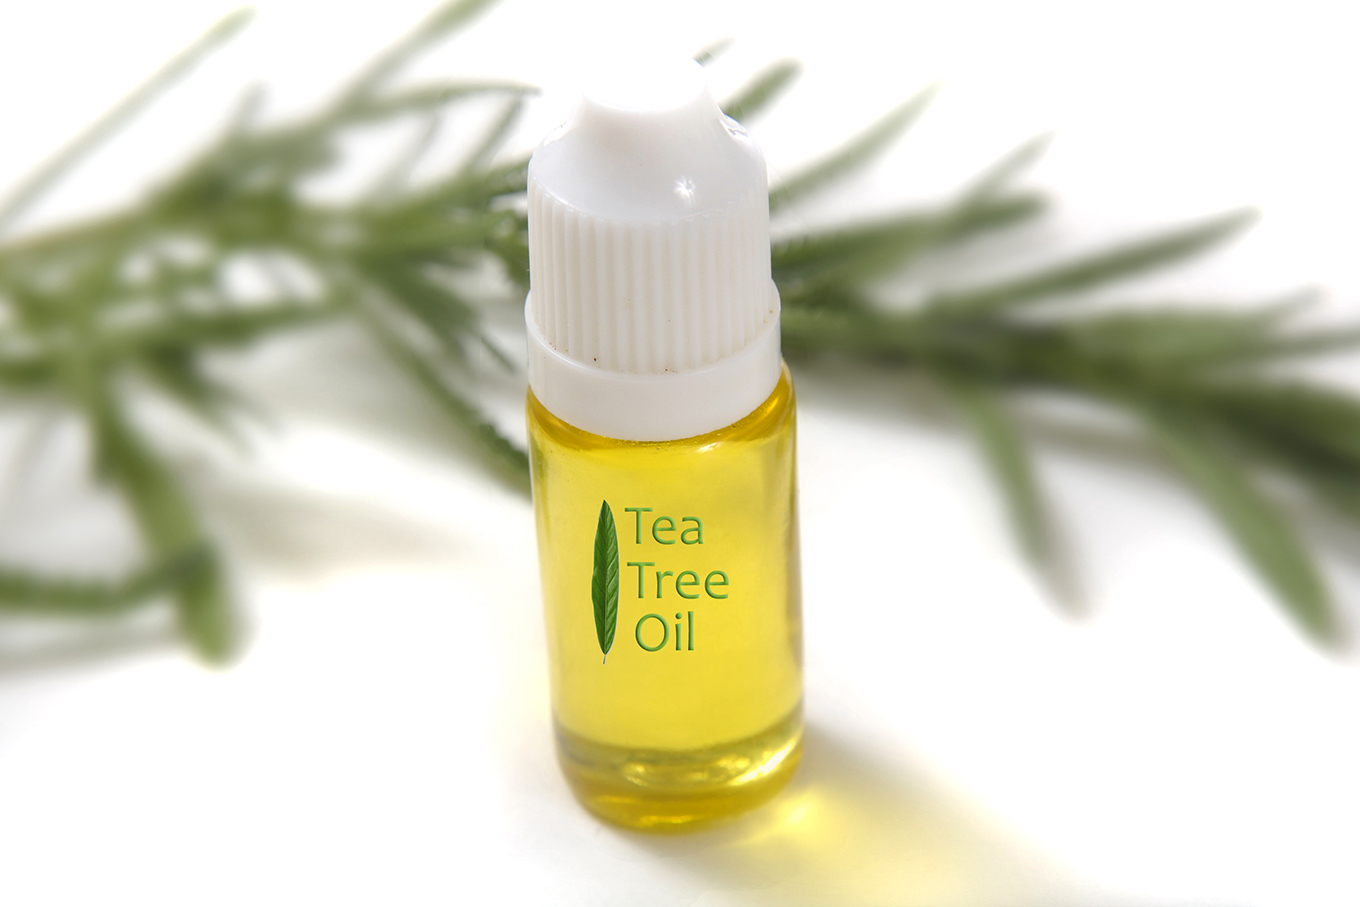 Tea tree oil for skin